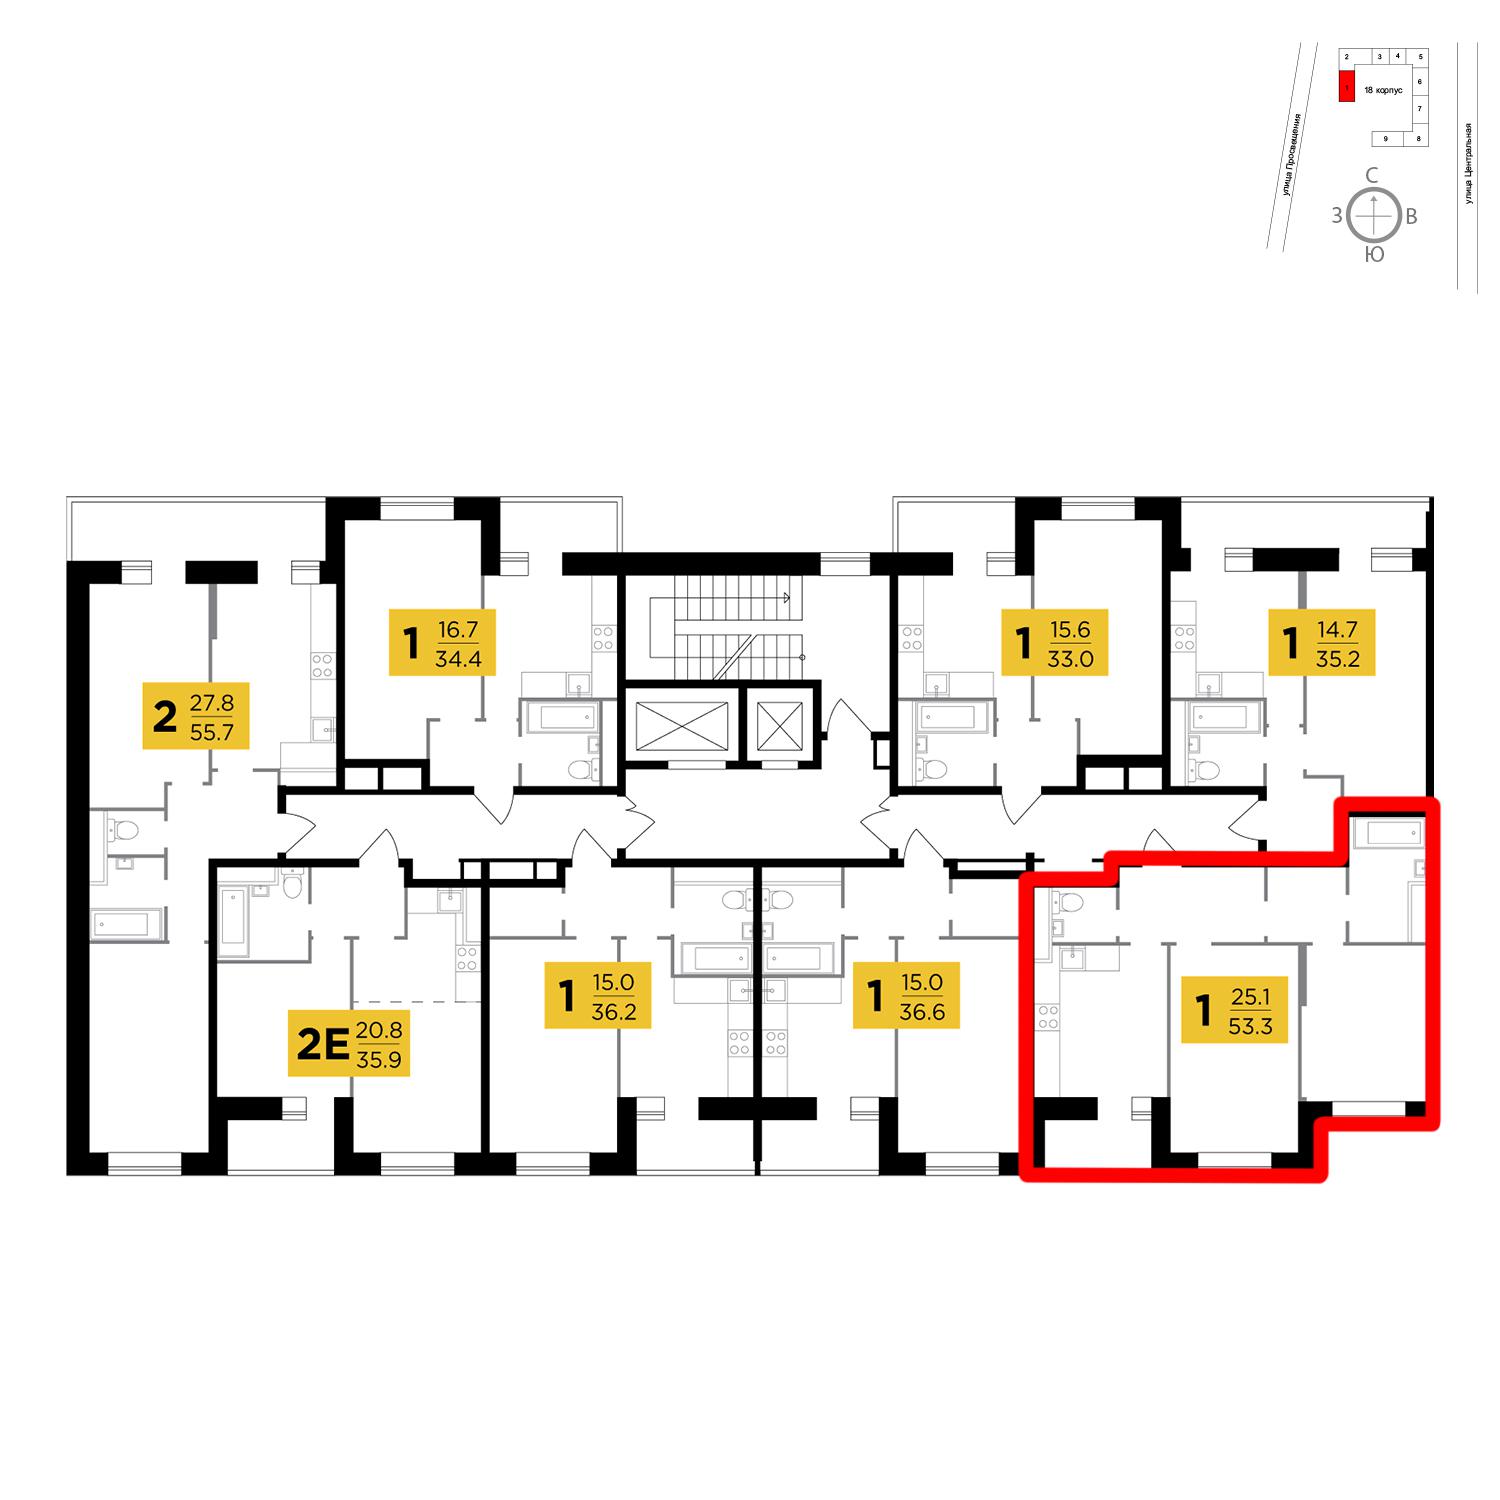 Продаётся 2-комнатная квартира в новостройке 53.3 кв.м. этаж 5/16 за 3 877 361 руб 